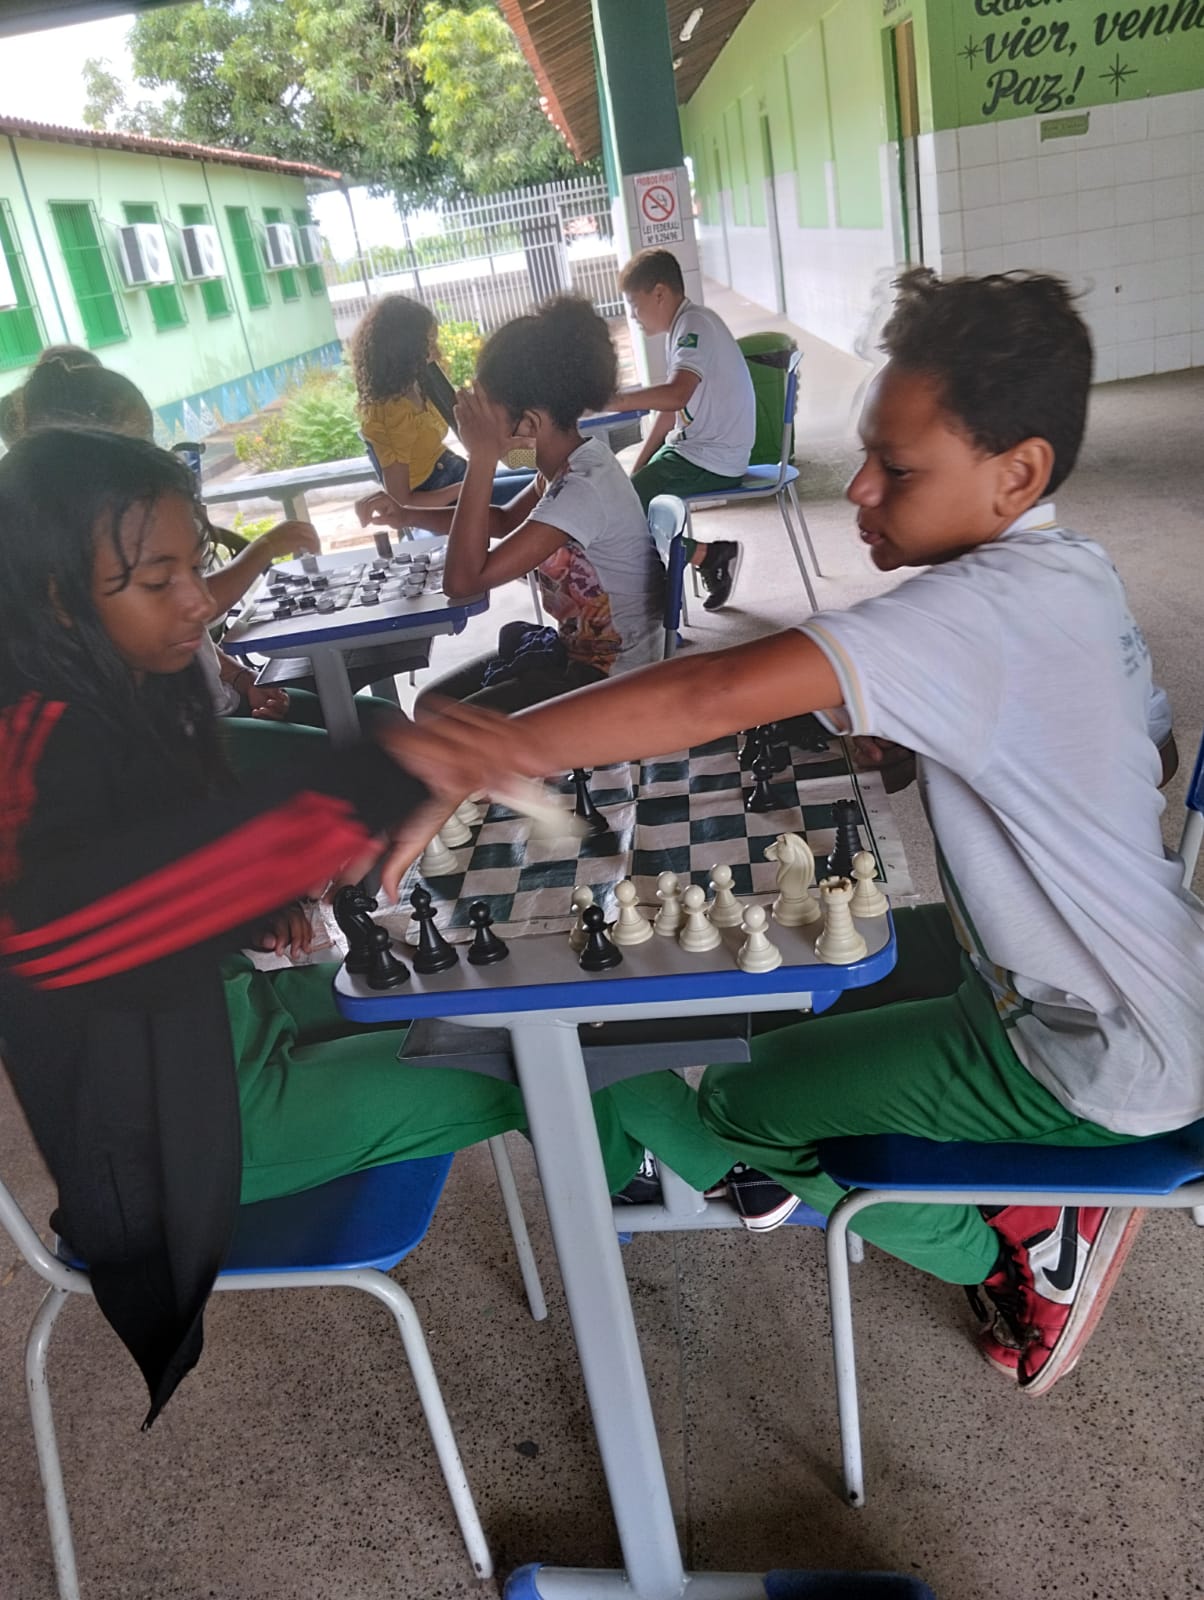 UNILA oferta aulas de xadrez online para a comunidade